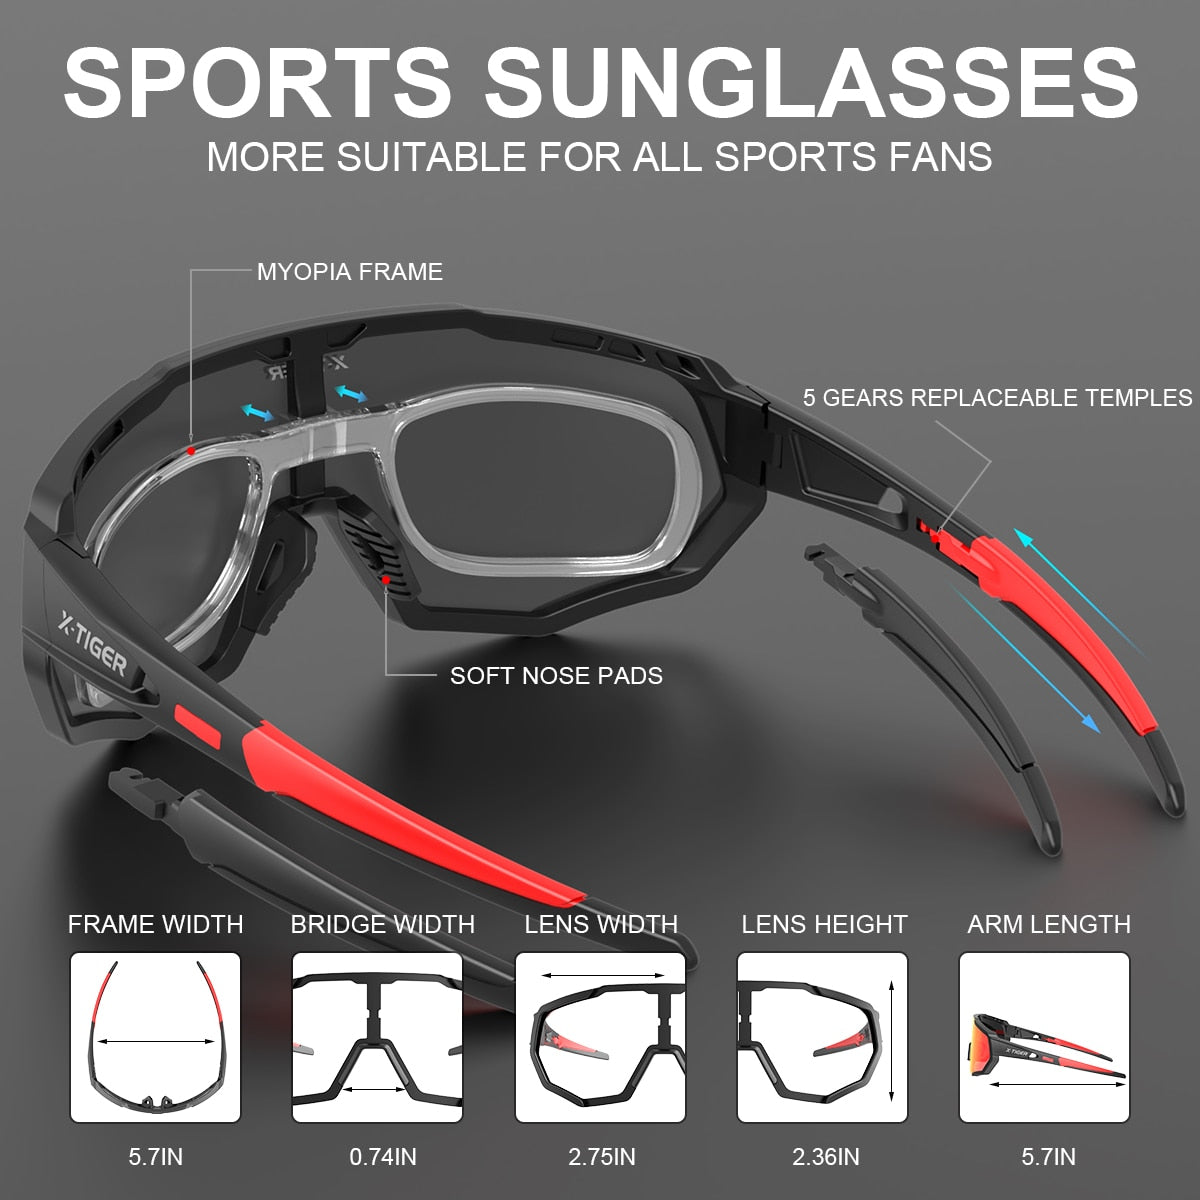 JPC UV400 Cycling Glasses 3 Lens - X-Tiger